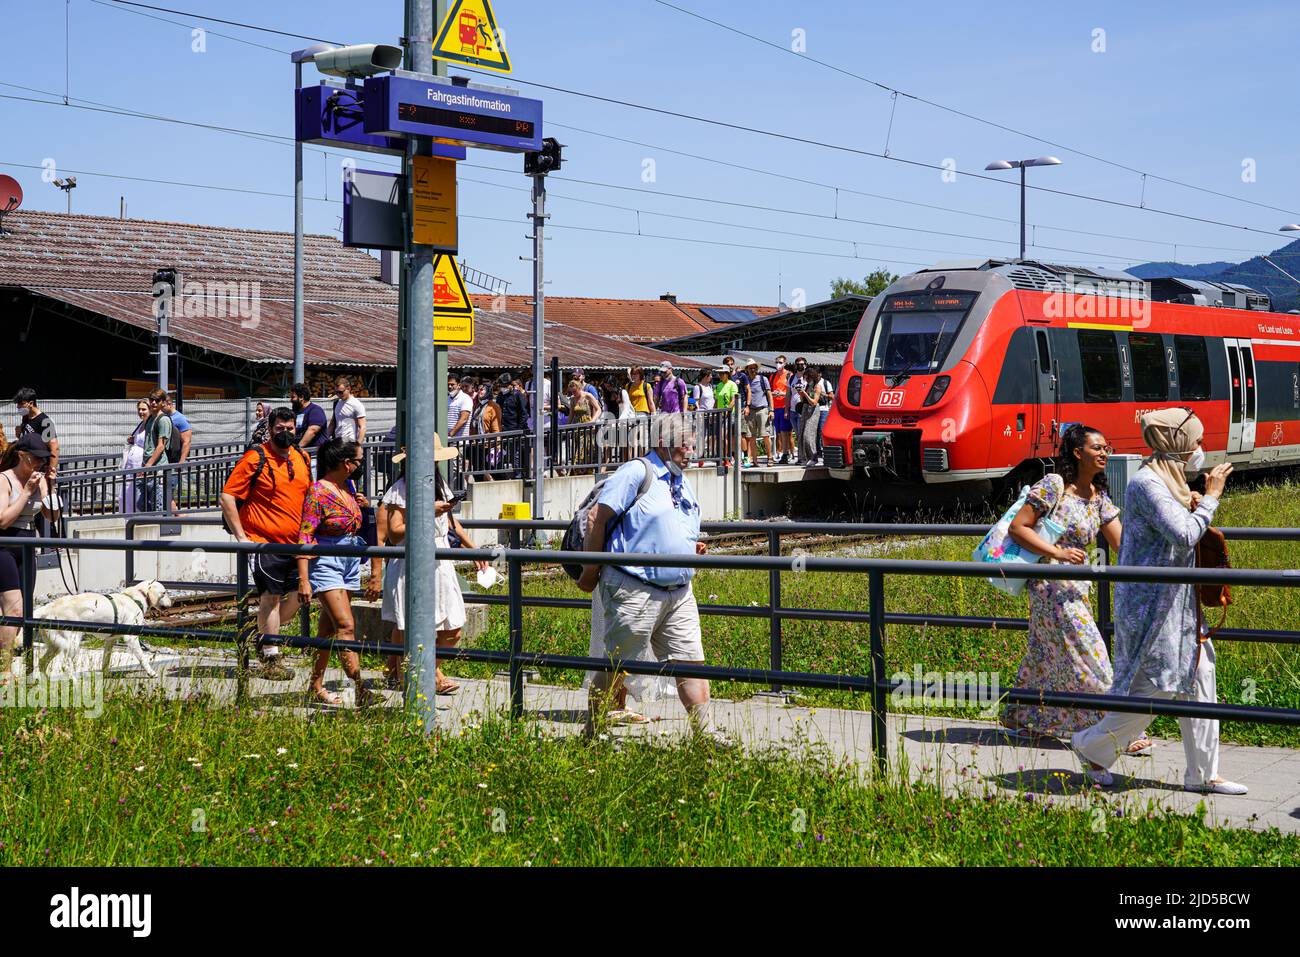 Los excursionistas de un día desde Munich bajar de un tren, línea R66, en la estación Kochel para continuar a Kochelsee o Walchensee en autobús, Kochel, Alemania, 18.6.22 Foto de stock